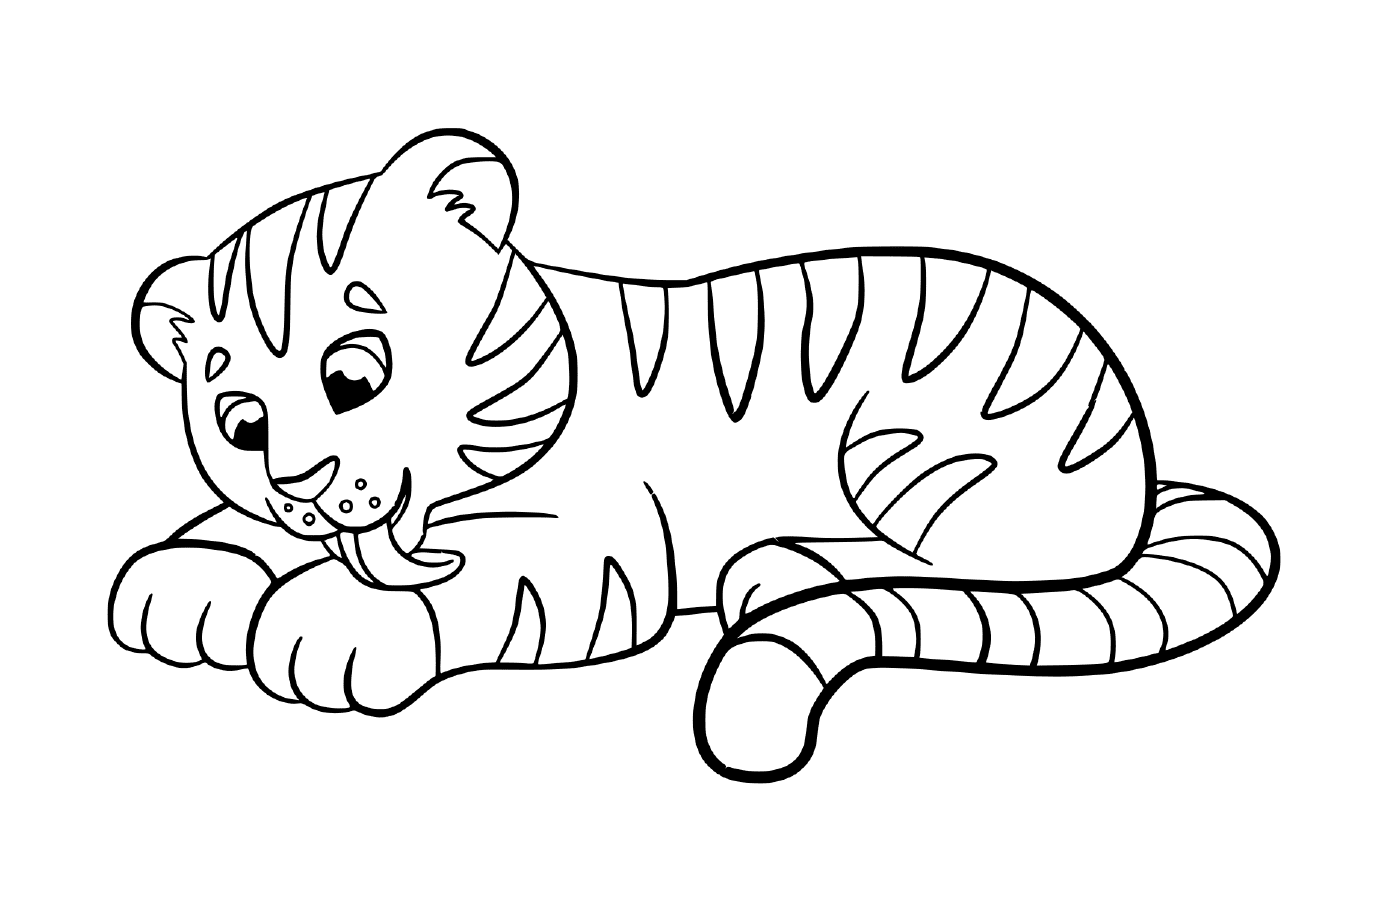  Un bambino tigre carino e kawaii 